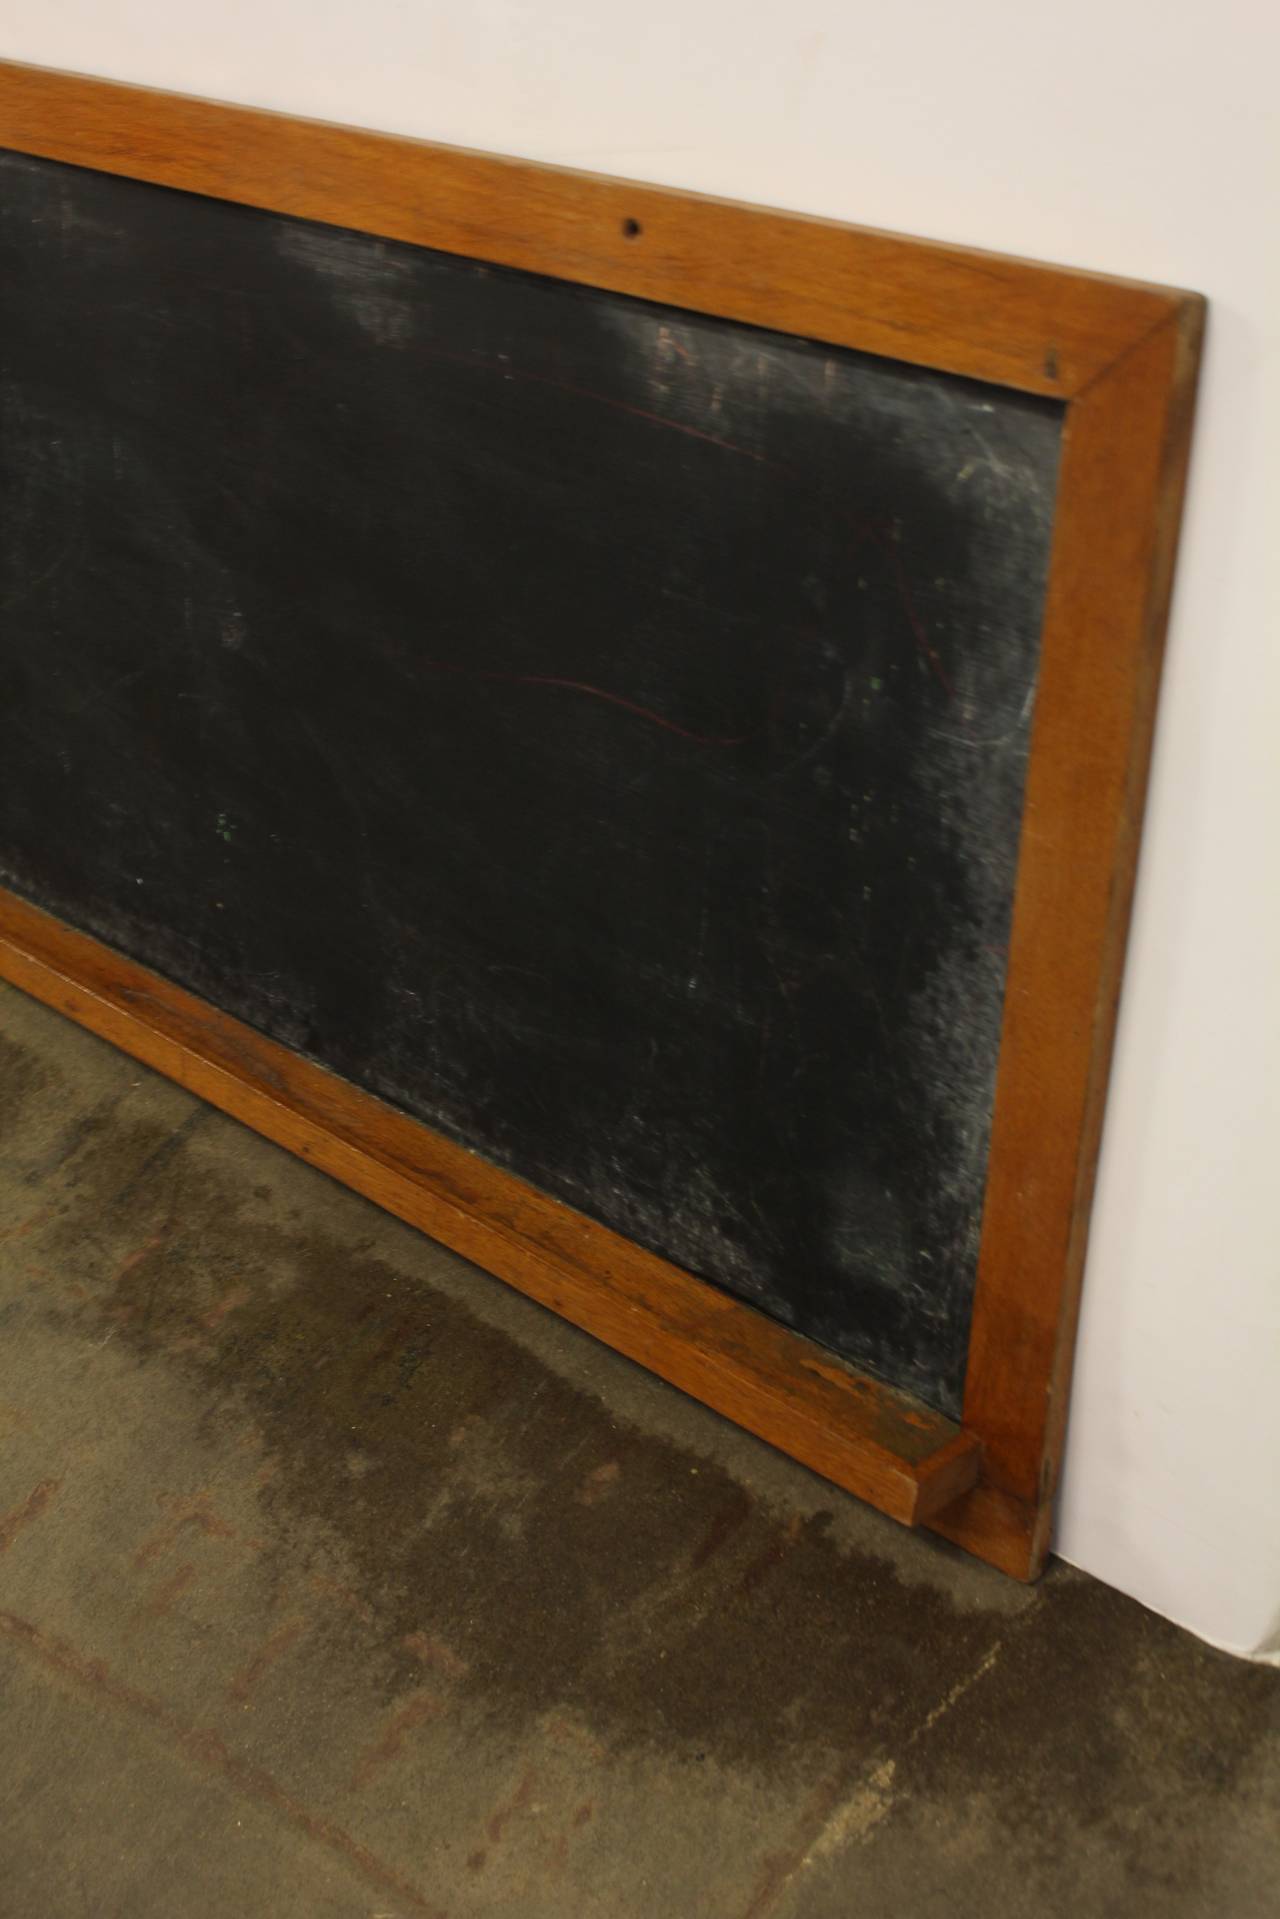 8ft long antique American school chalkboard in original oak frame.